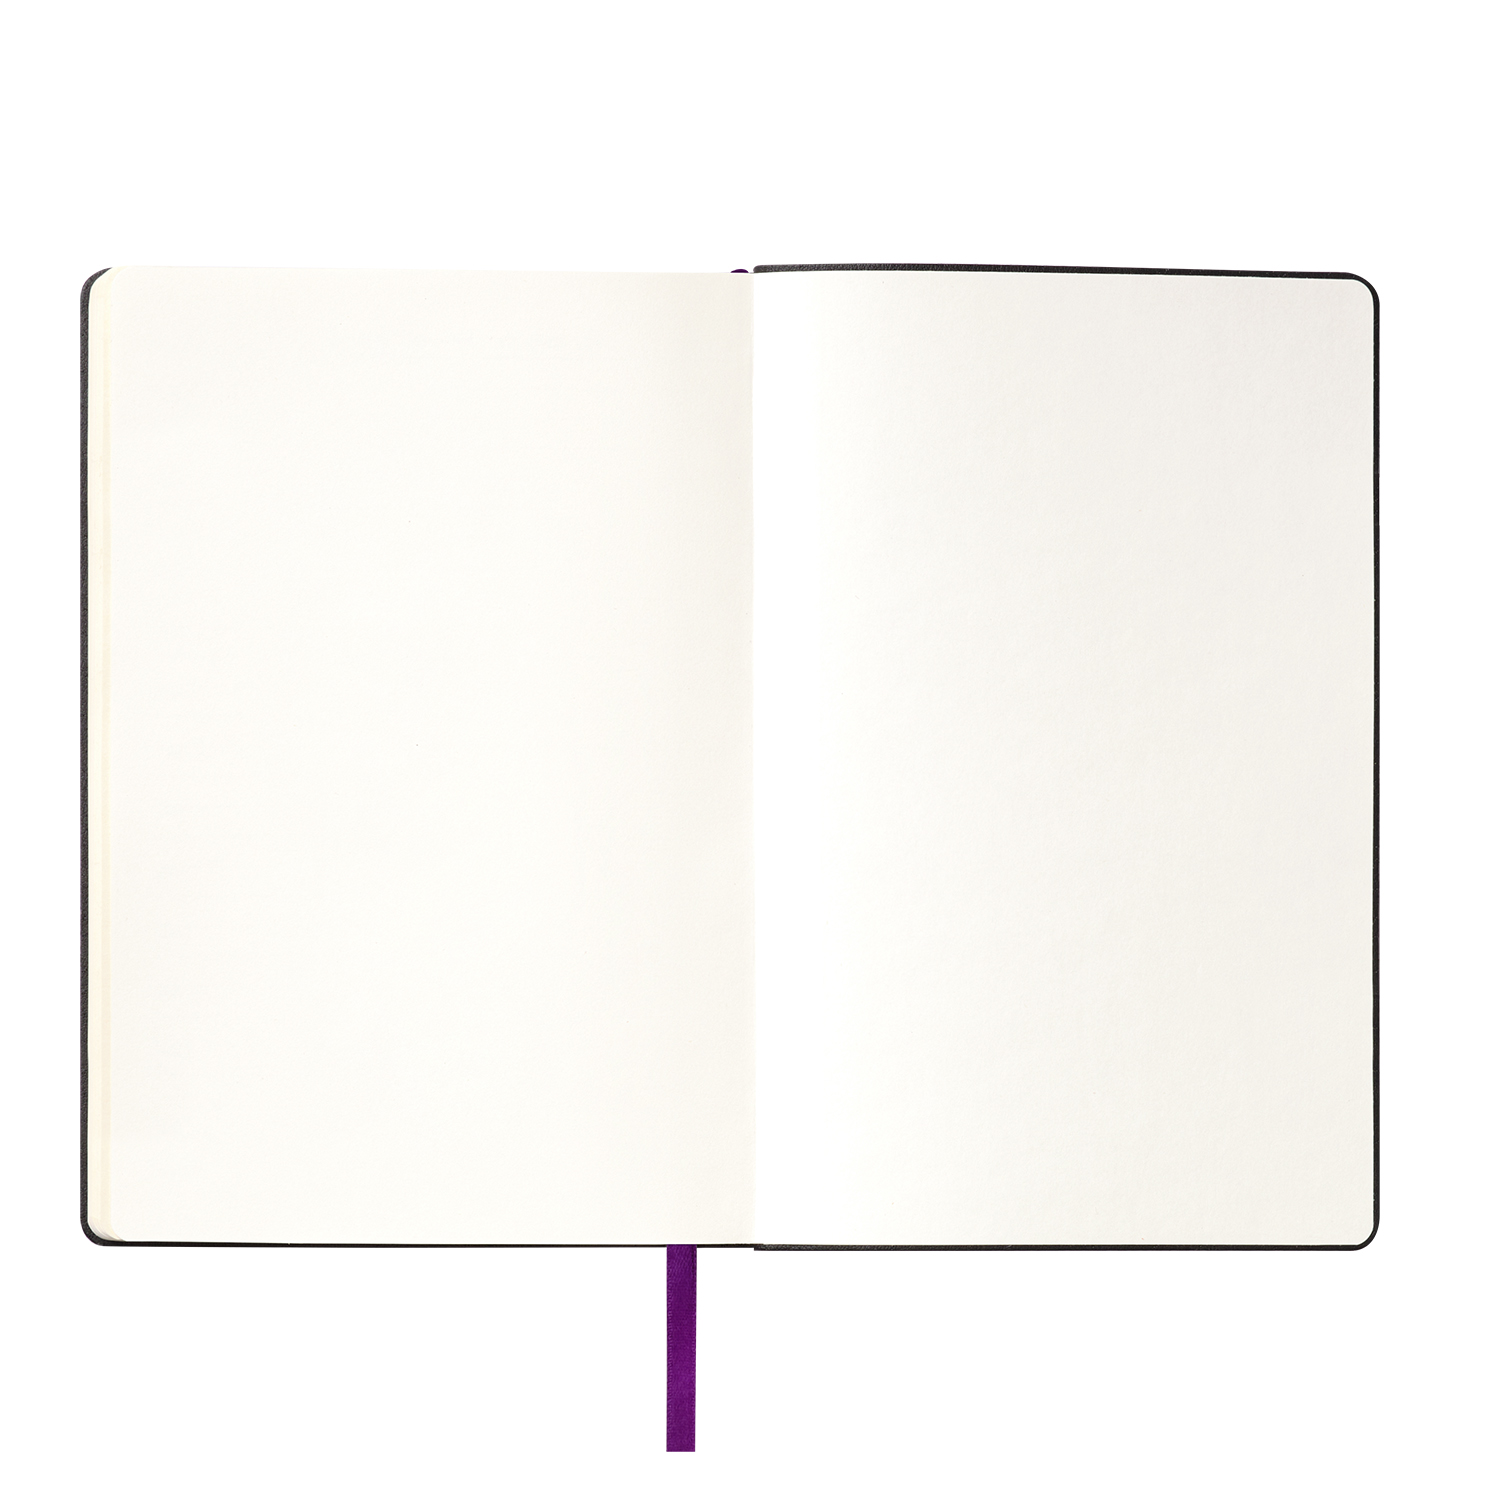 Ежедневник Spark недатированный, фиолетовый (без упаковки, без стикера)